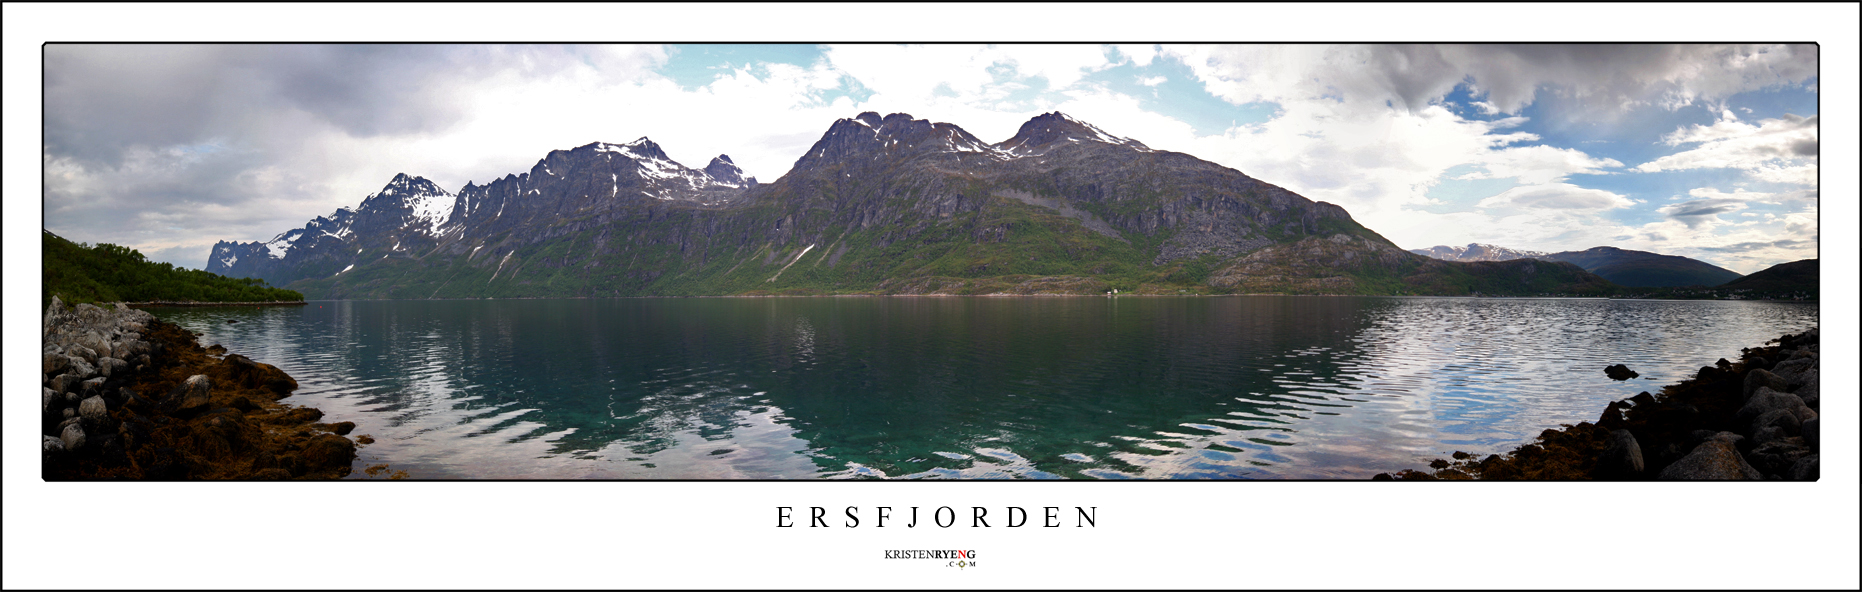 ErsfjordenPanorama.jpg - Utsikt over Ersfjorden. Skamtinden ytterste fjell til venstre. Buren som ytterste fjell til høyre i fjellkjeden.